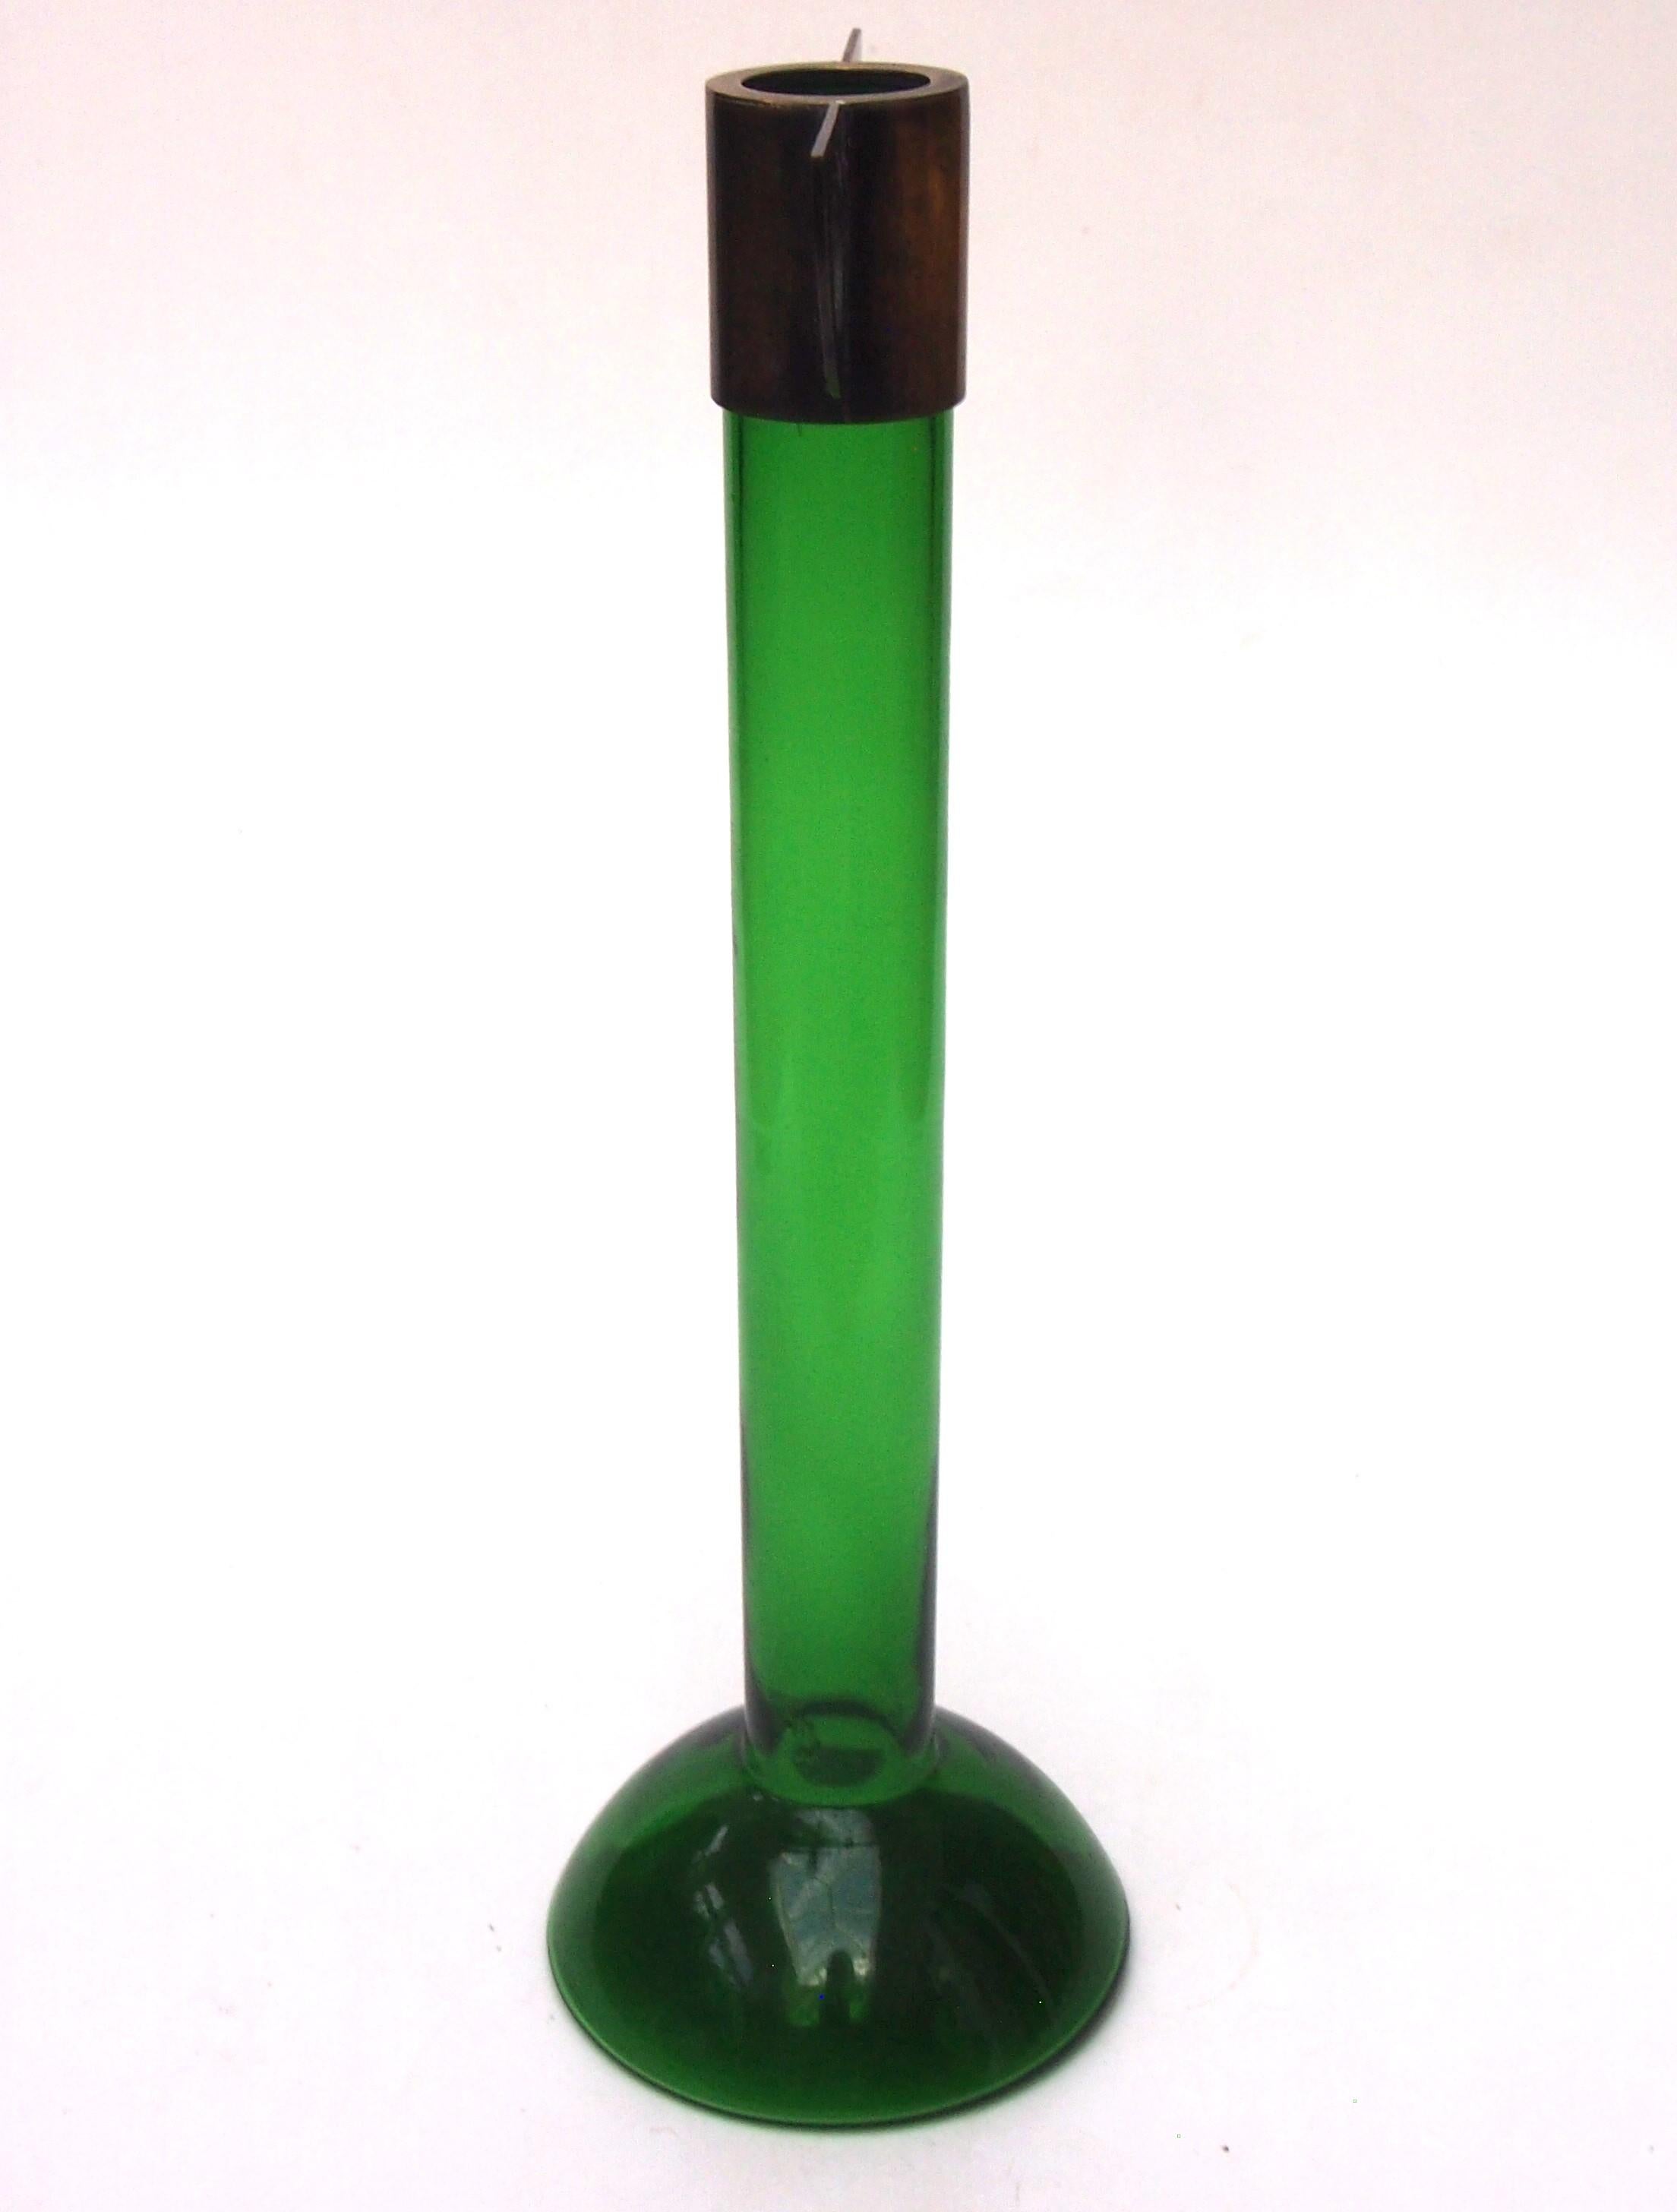 Remarquable vase en verre vert de Meyr's Neffe of Bohemian avec un sommet en métal stylisé, ailé par deux brides en métal en forme de quart de cercle décorées de grands trous circulaires - équilibrant une large base circulaire bombée en verre. Un